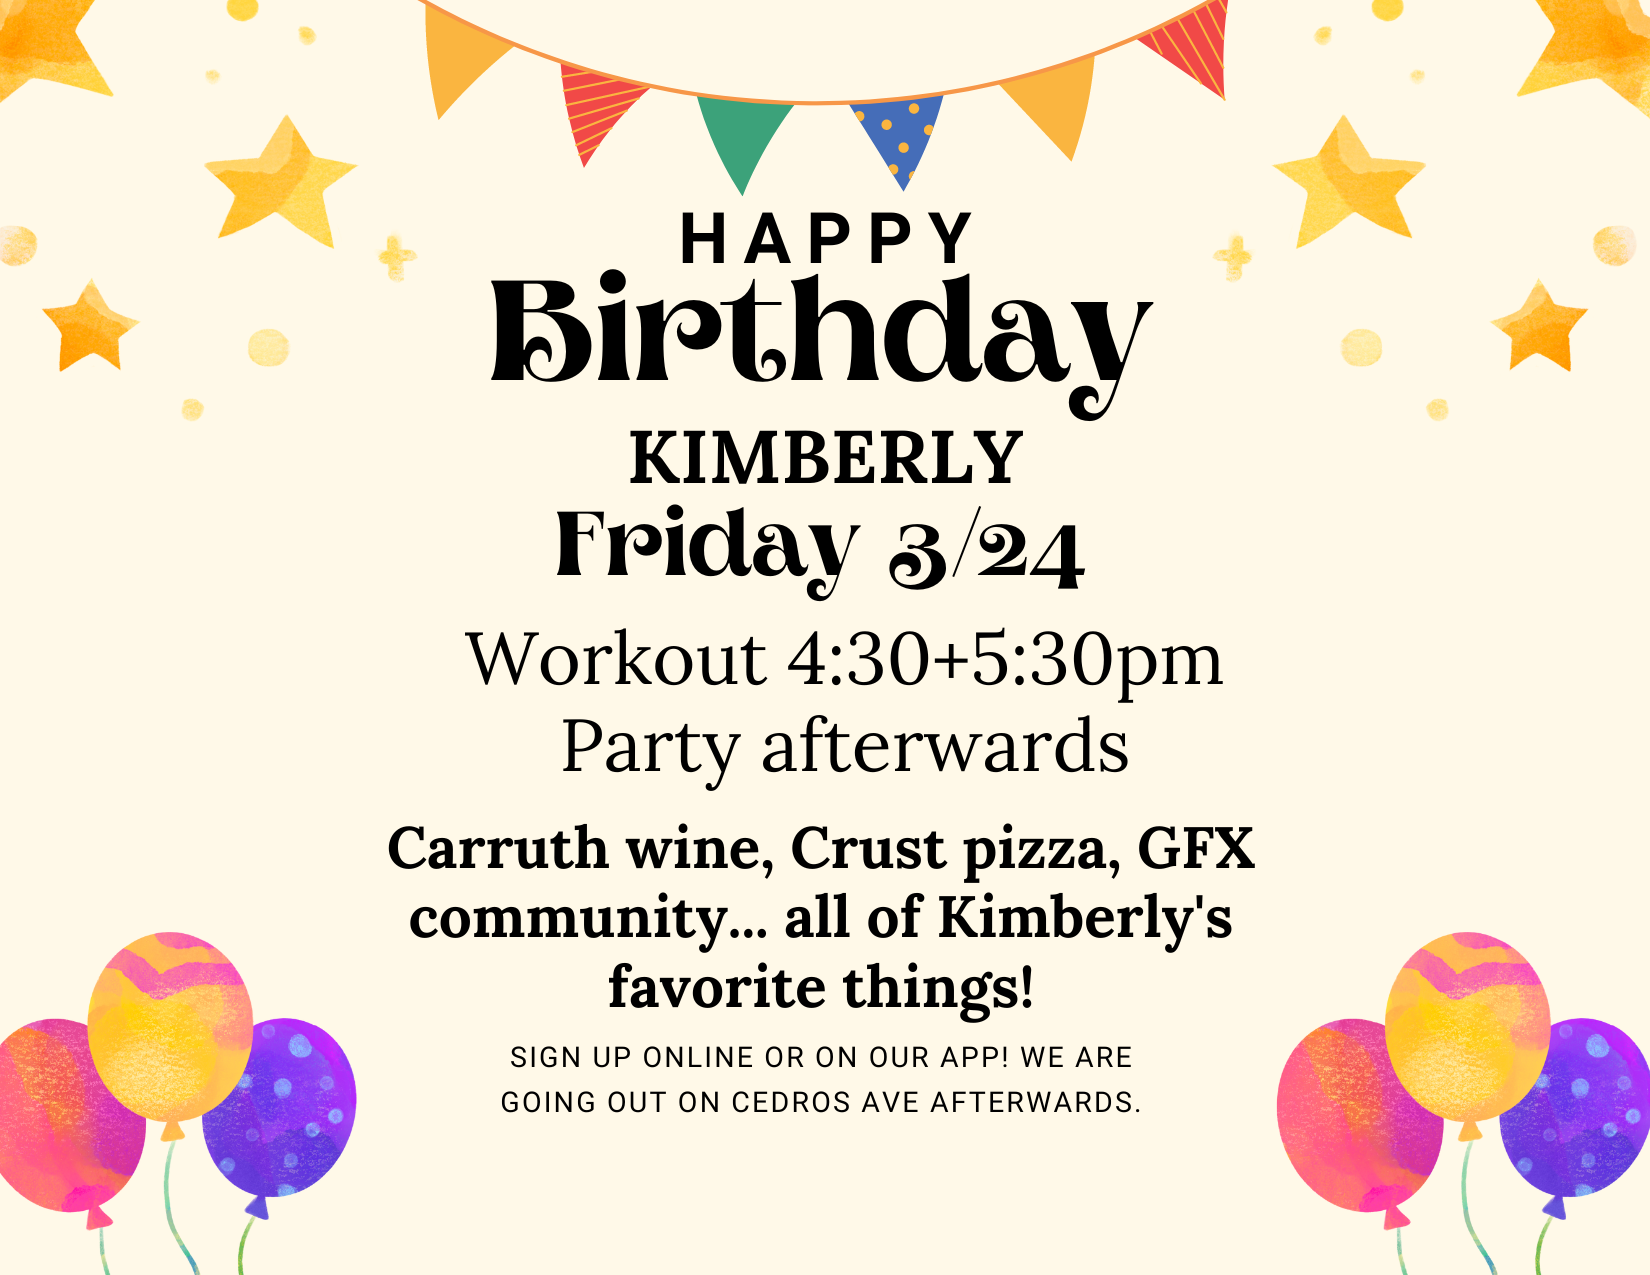 Kimberly’s Birthday Party 3/24!